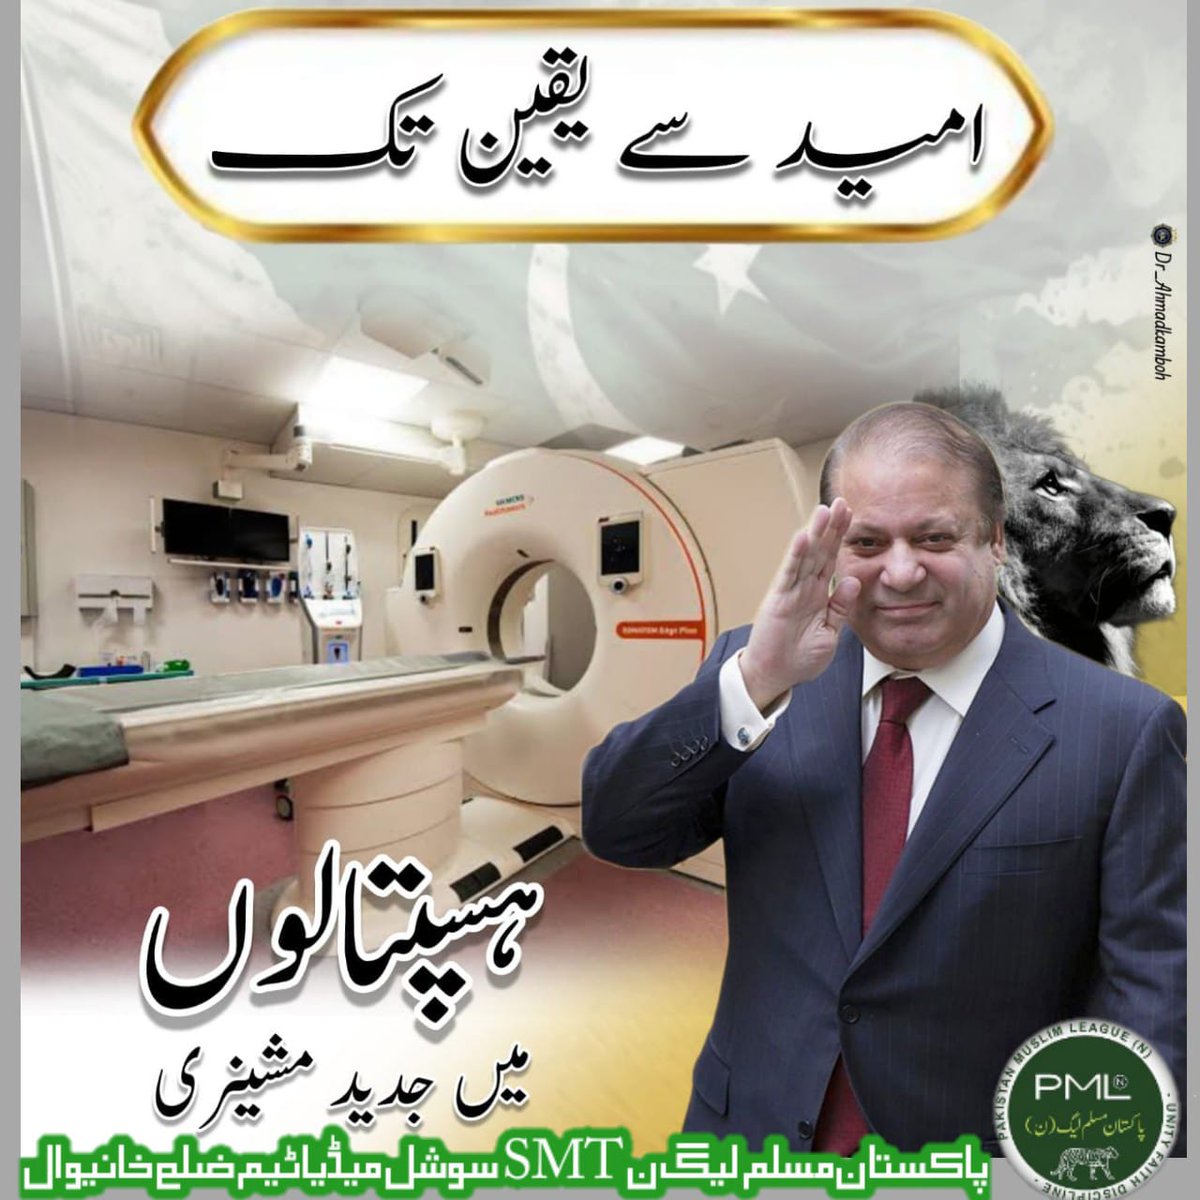 #نواز_اور_عوام_یکجان

PMLN government ever reduce the inflation in Pakistan 
#نواز_اور_عوام_یکجان